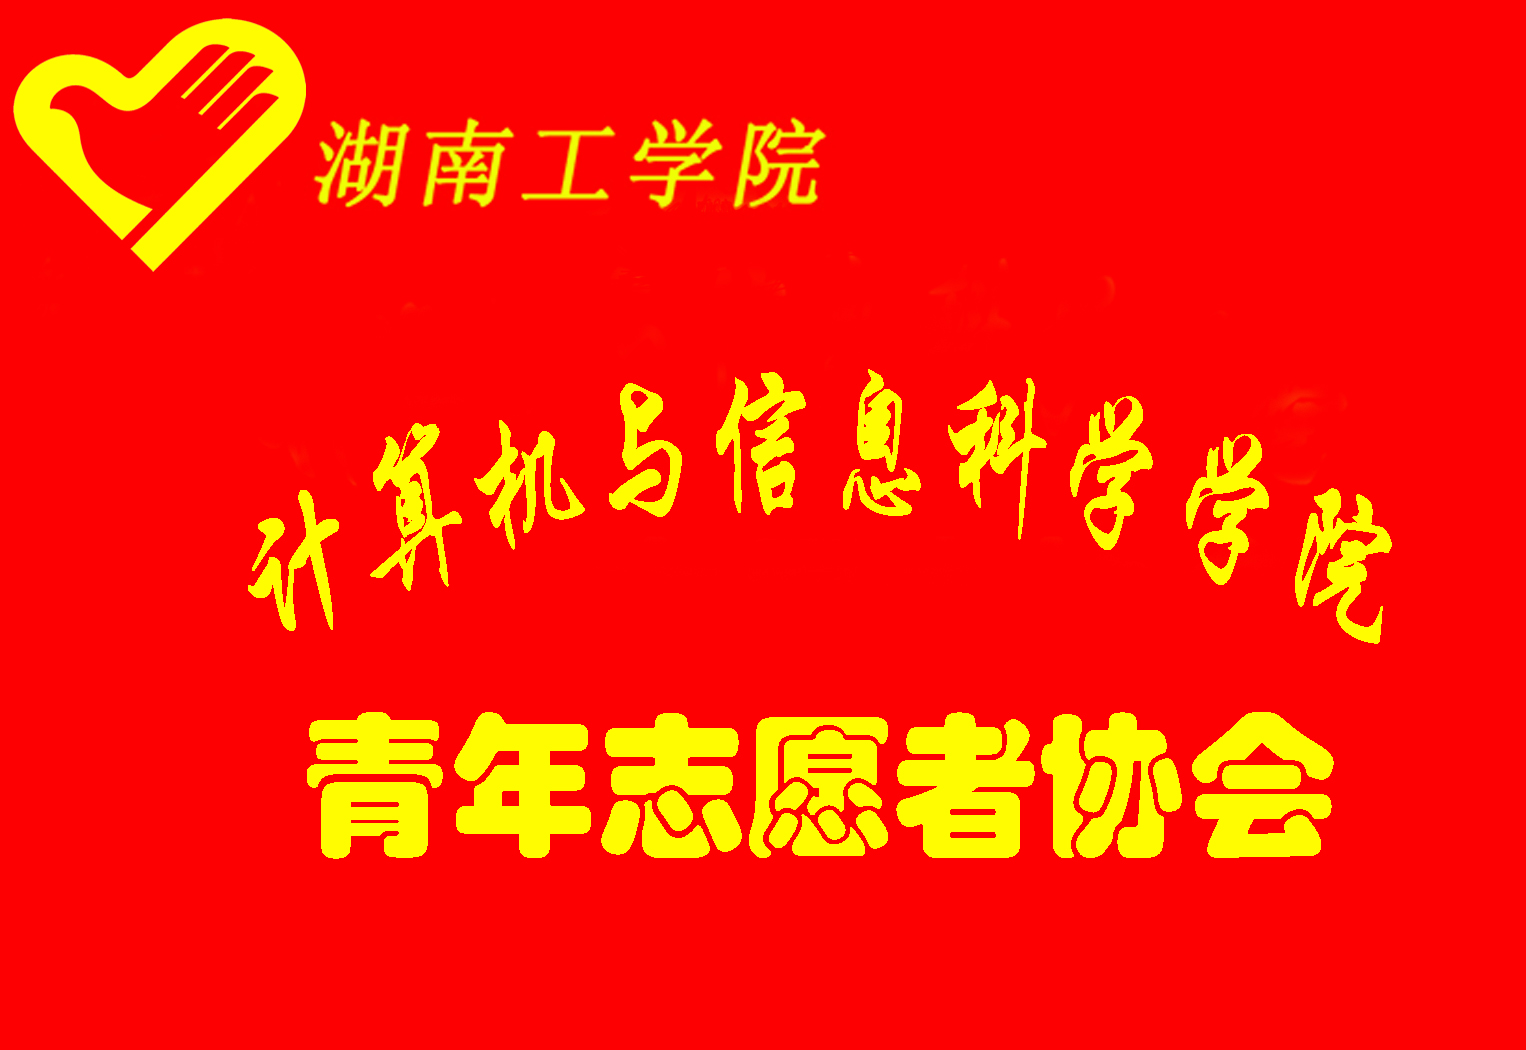 湖南工學院計算機與信息科學學院青協會旗